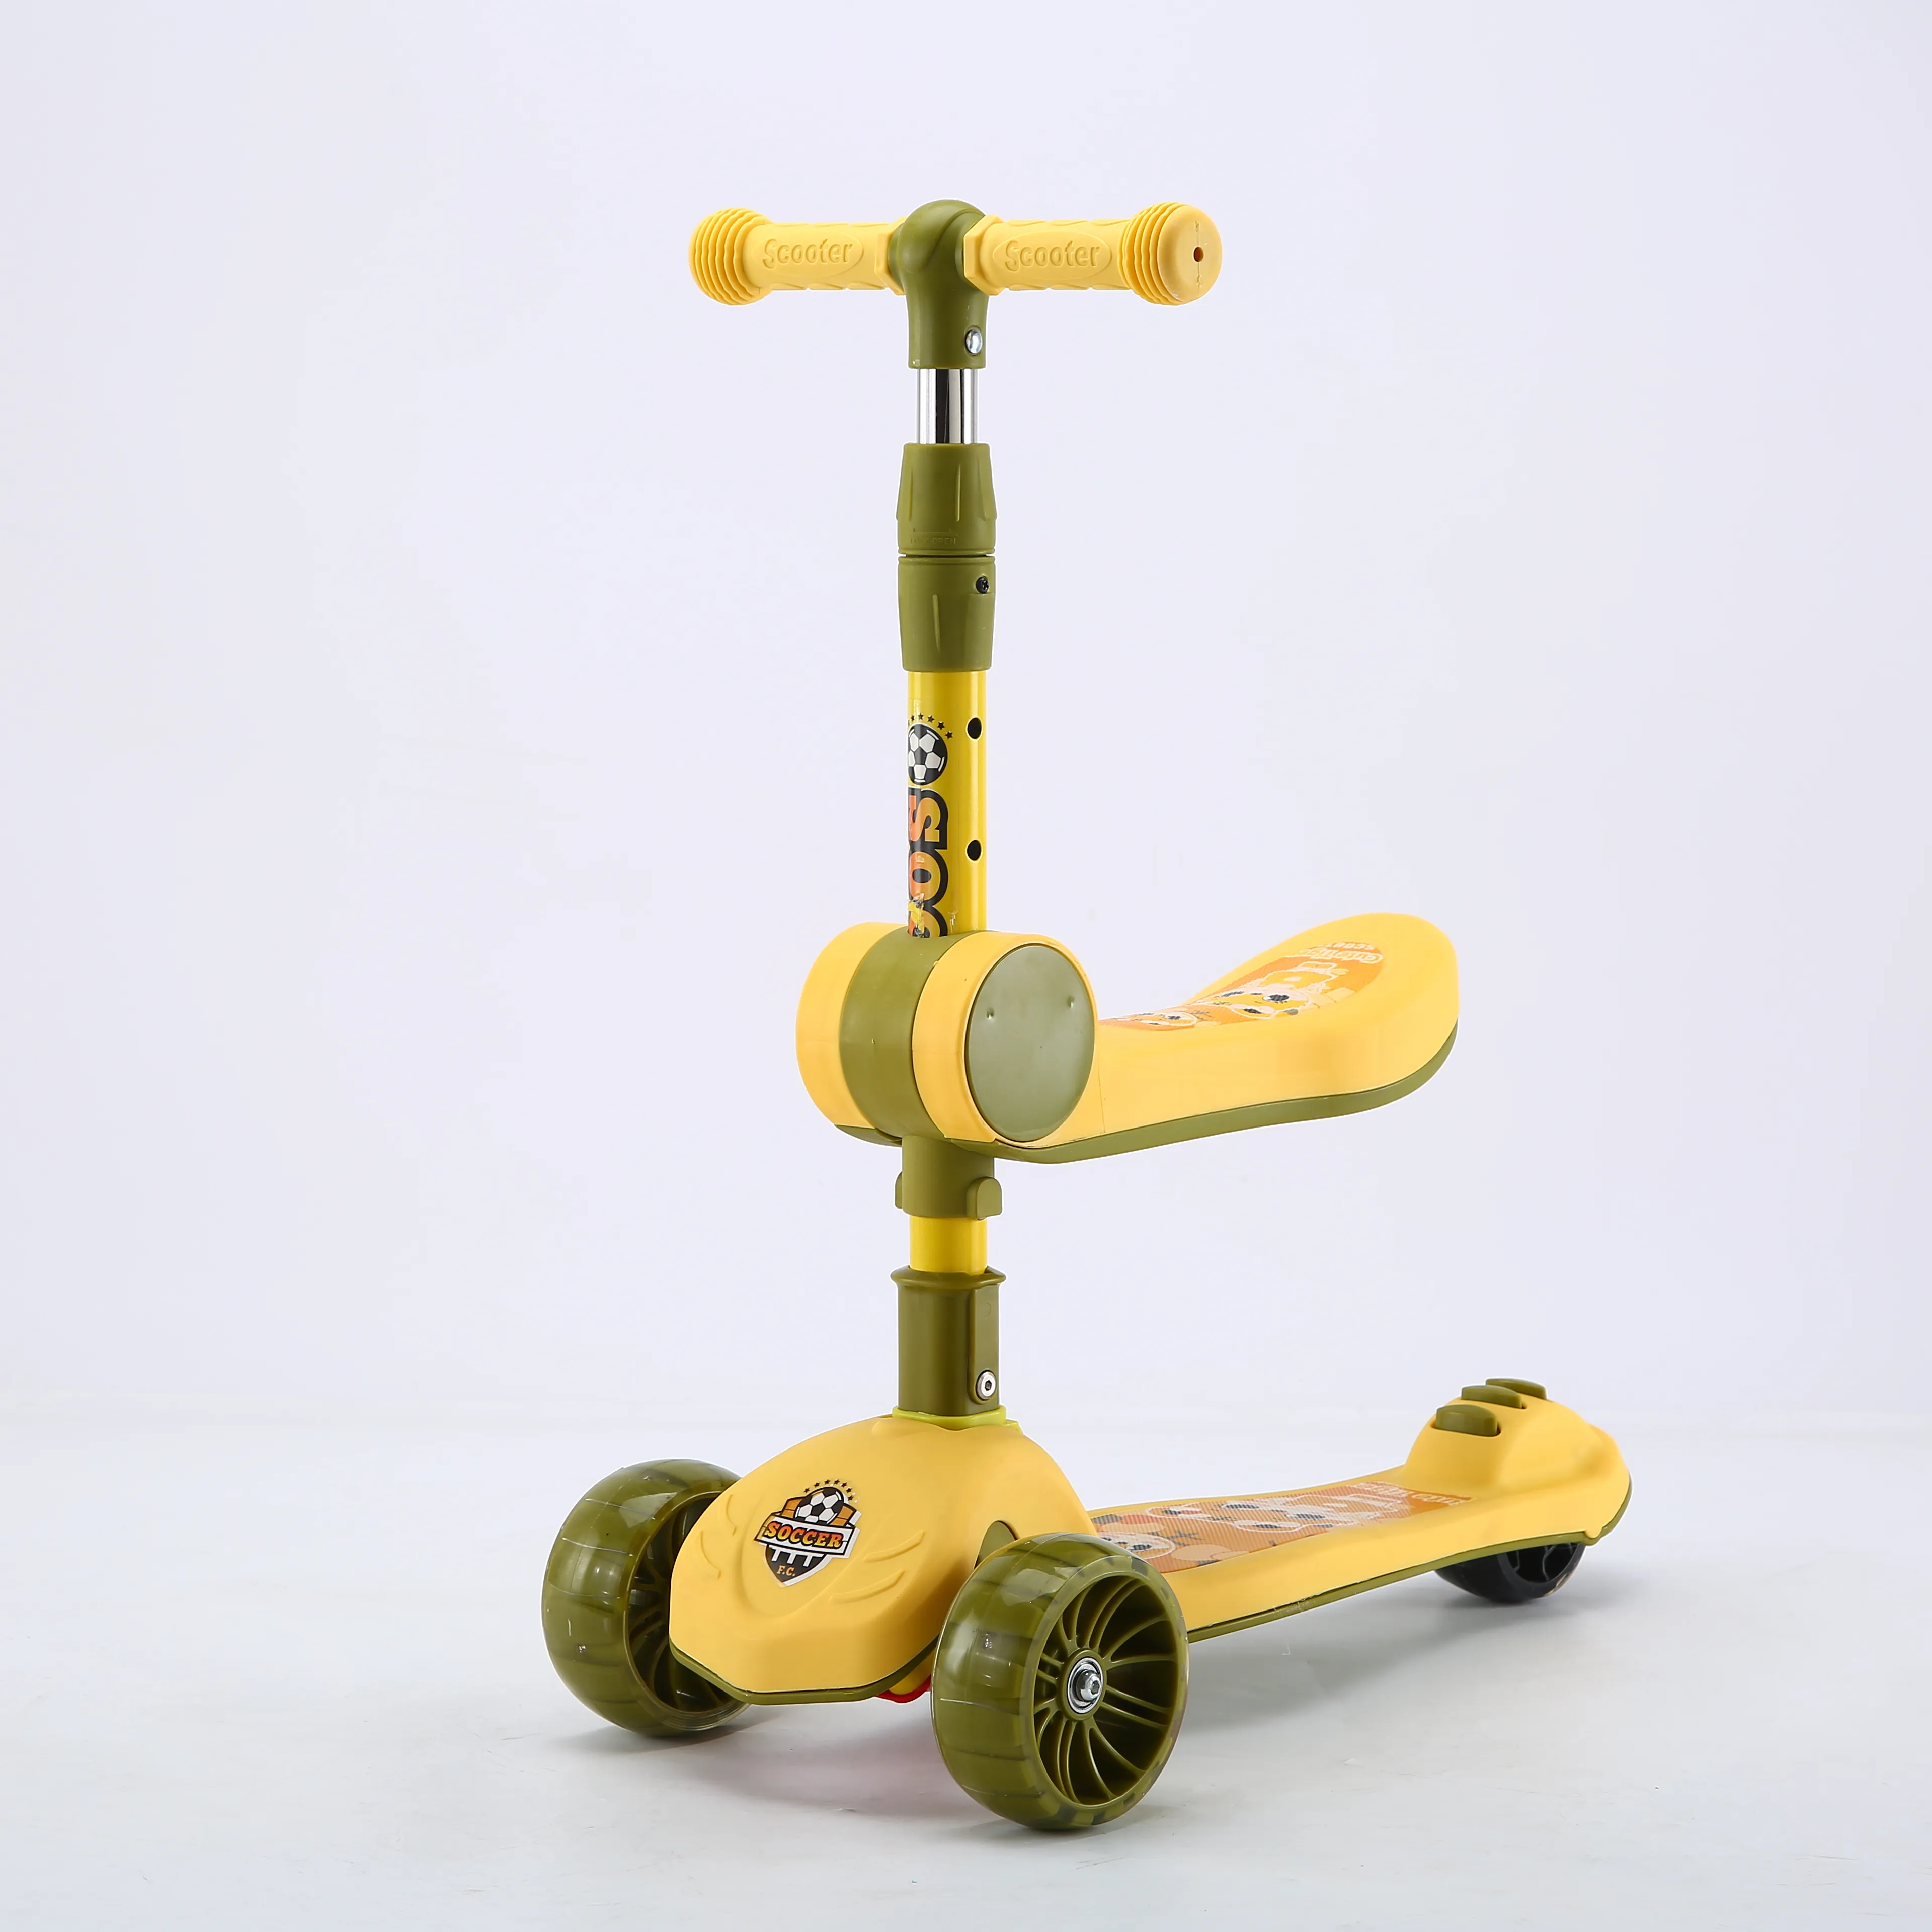 2021 Fabrik preis Big Wheels Kids Pedal Kick Scooter